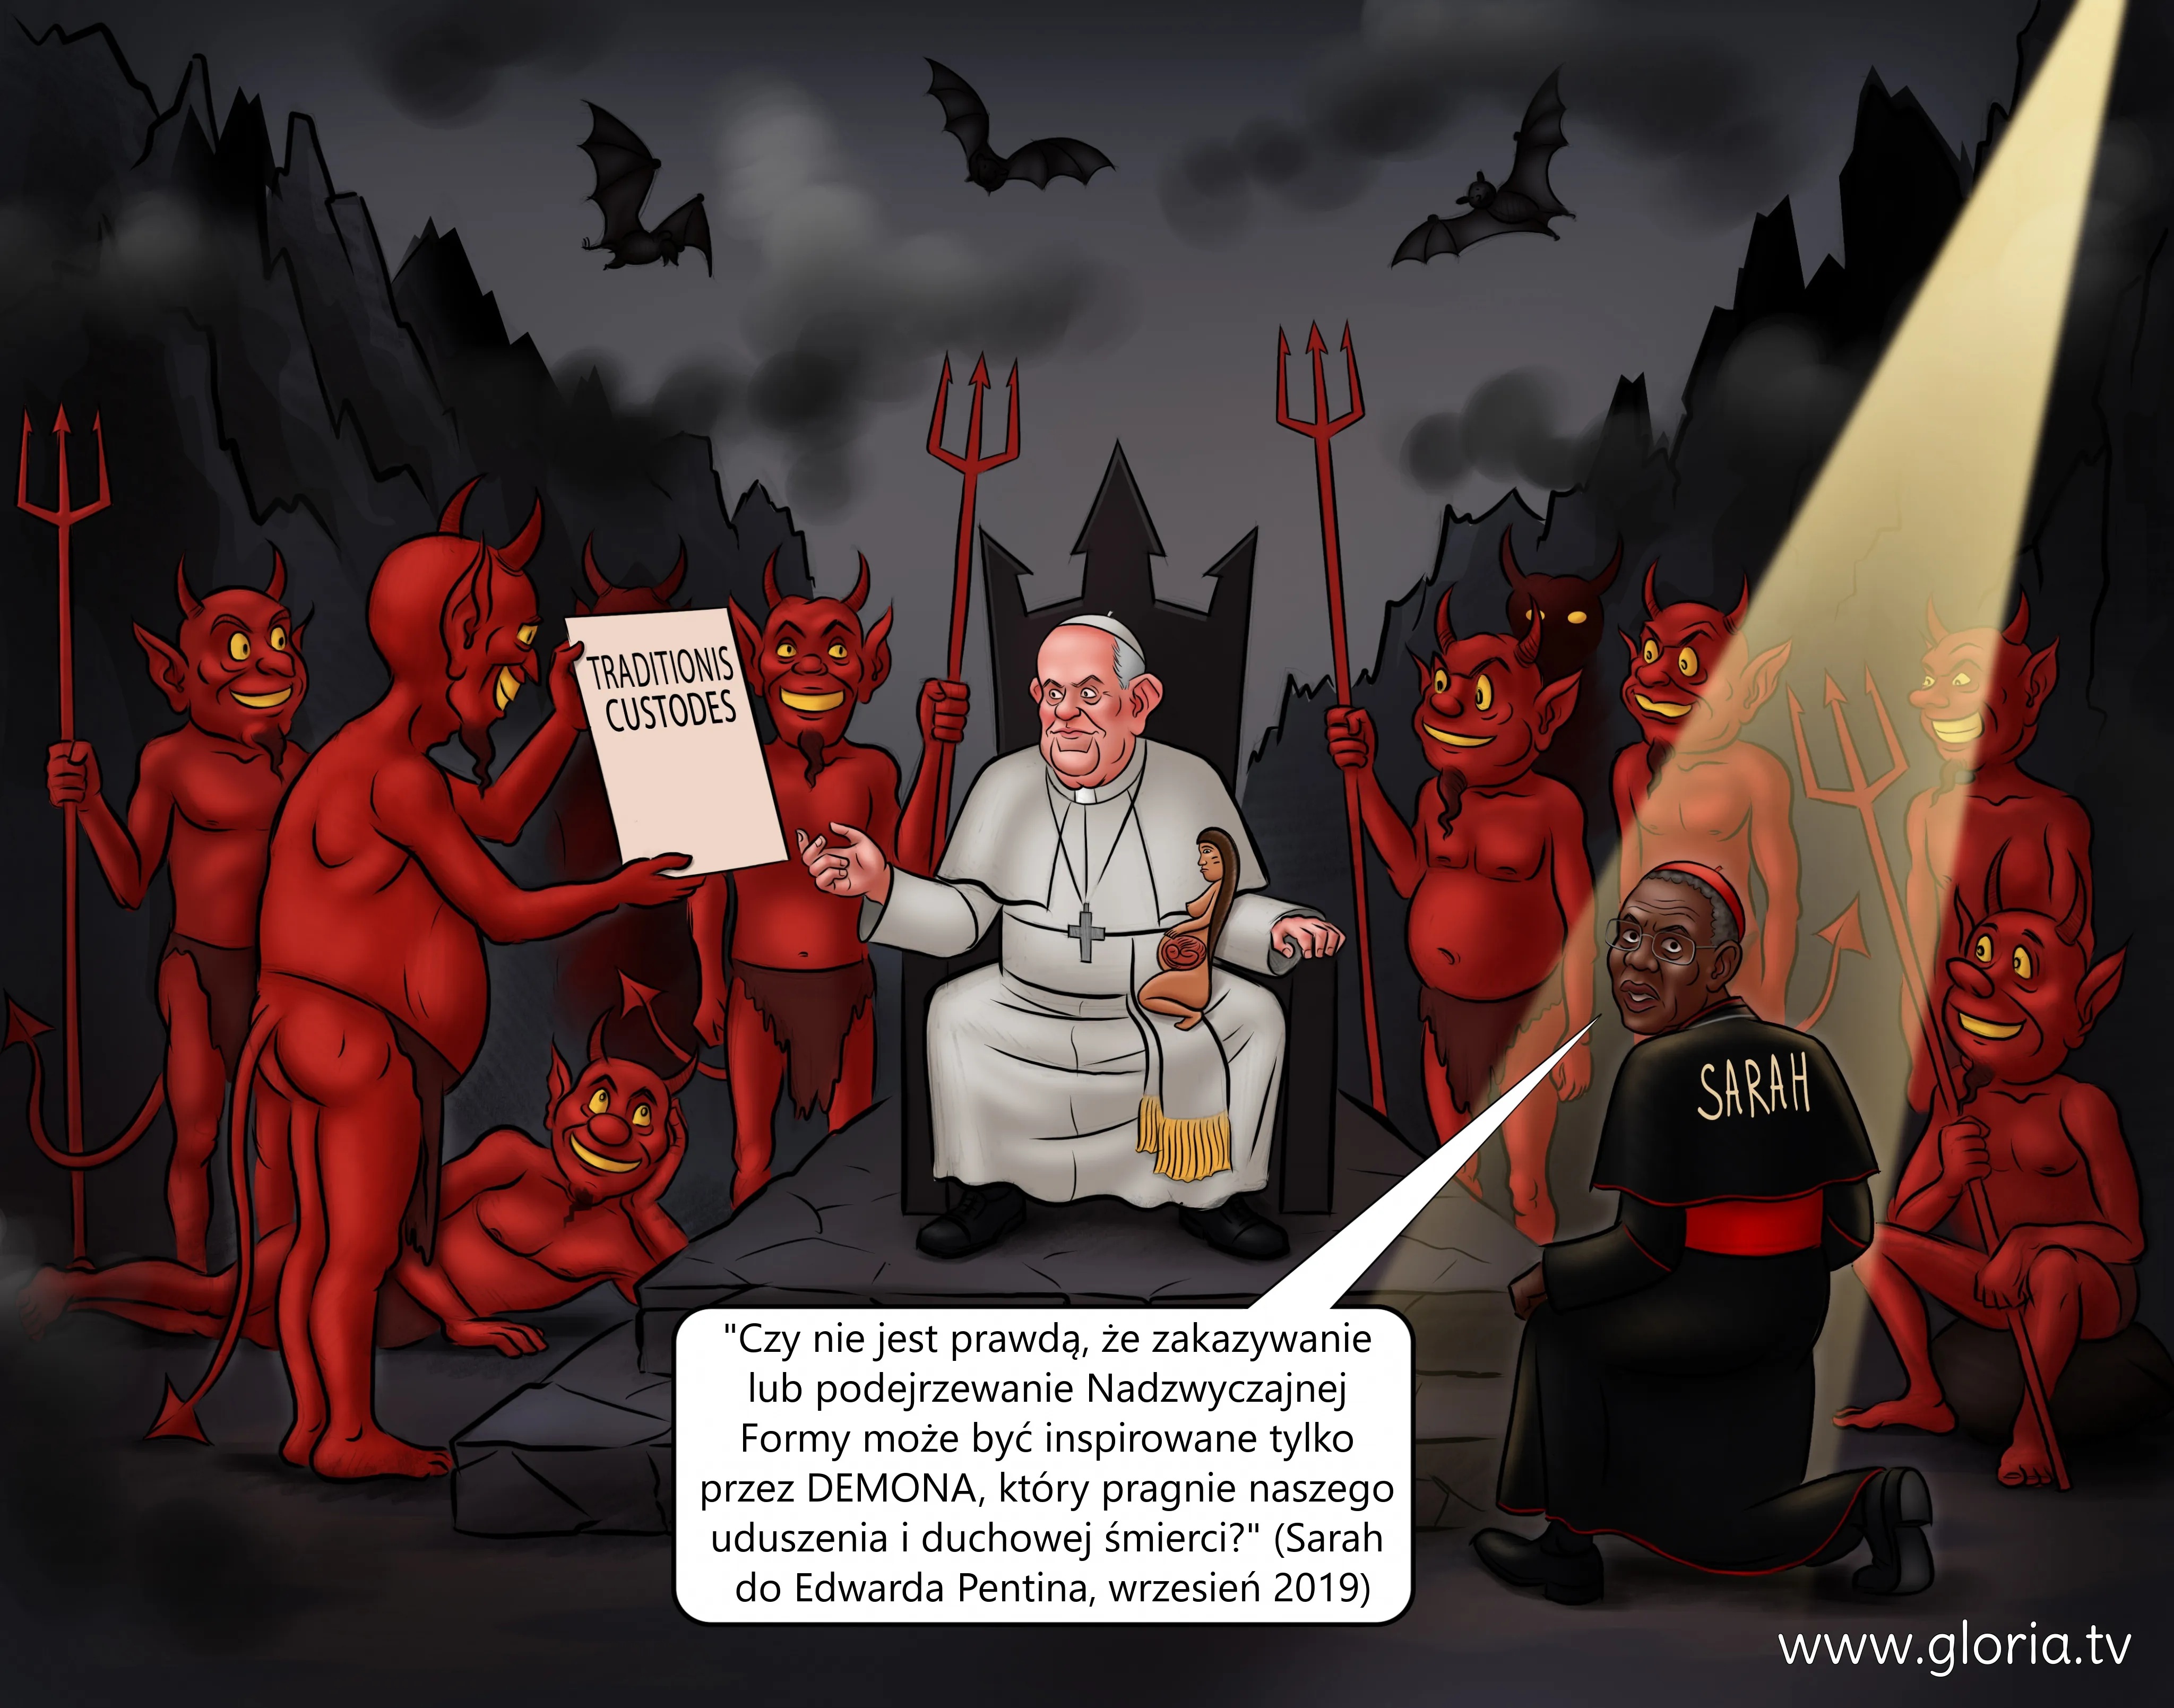 Traditionis custodes. Antypapież Franciszek-Bergoglio z diabłami.